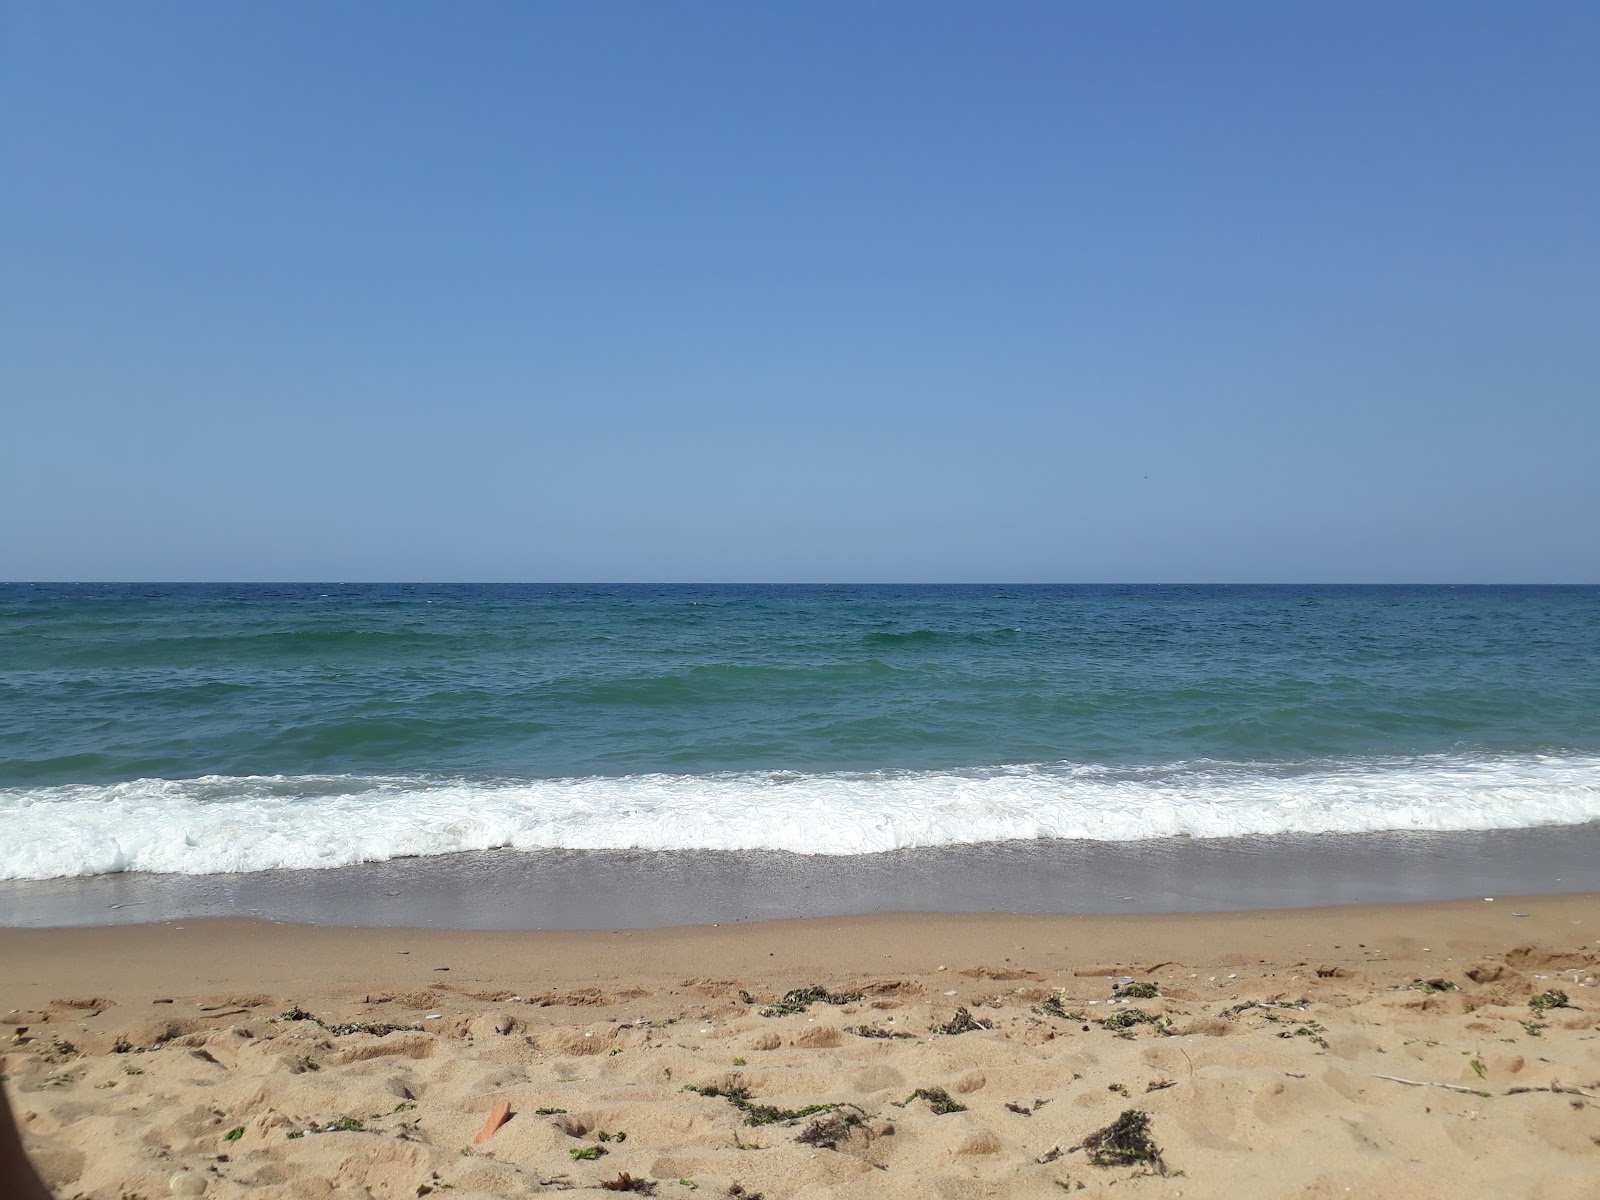 KApisuyu Koyu Plaji'in fotoğrafı geniş plaj ile birlikte